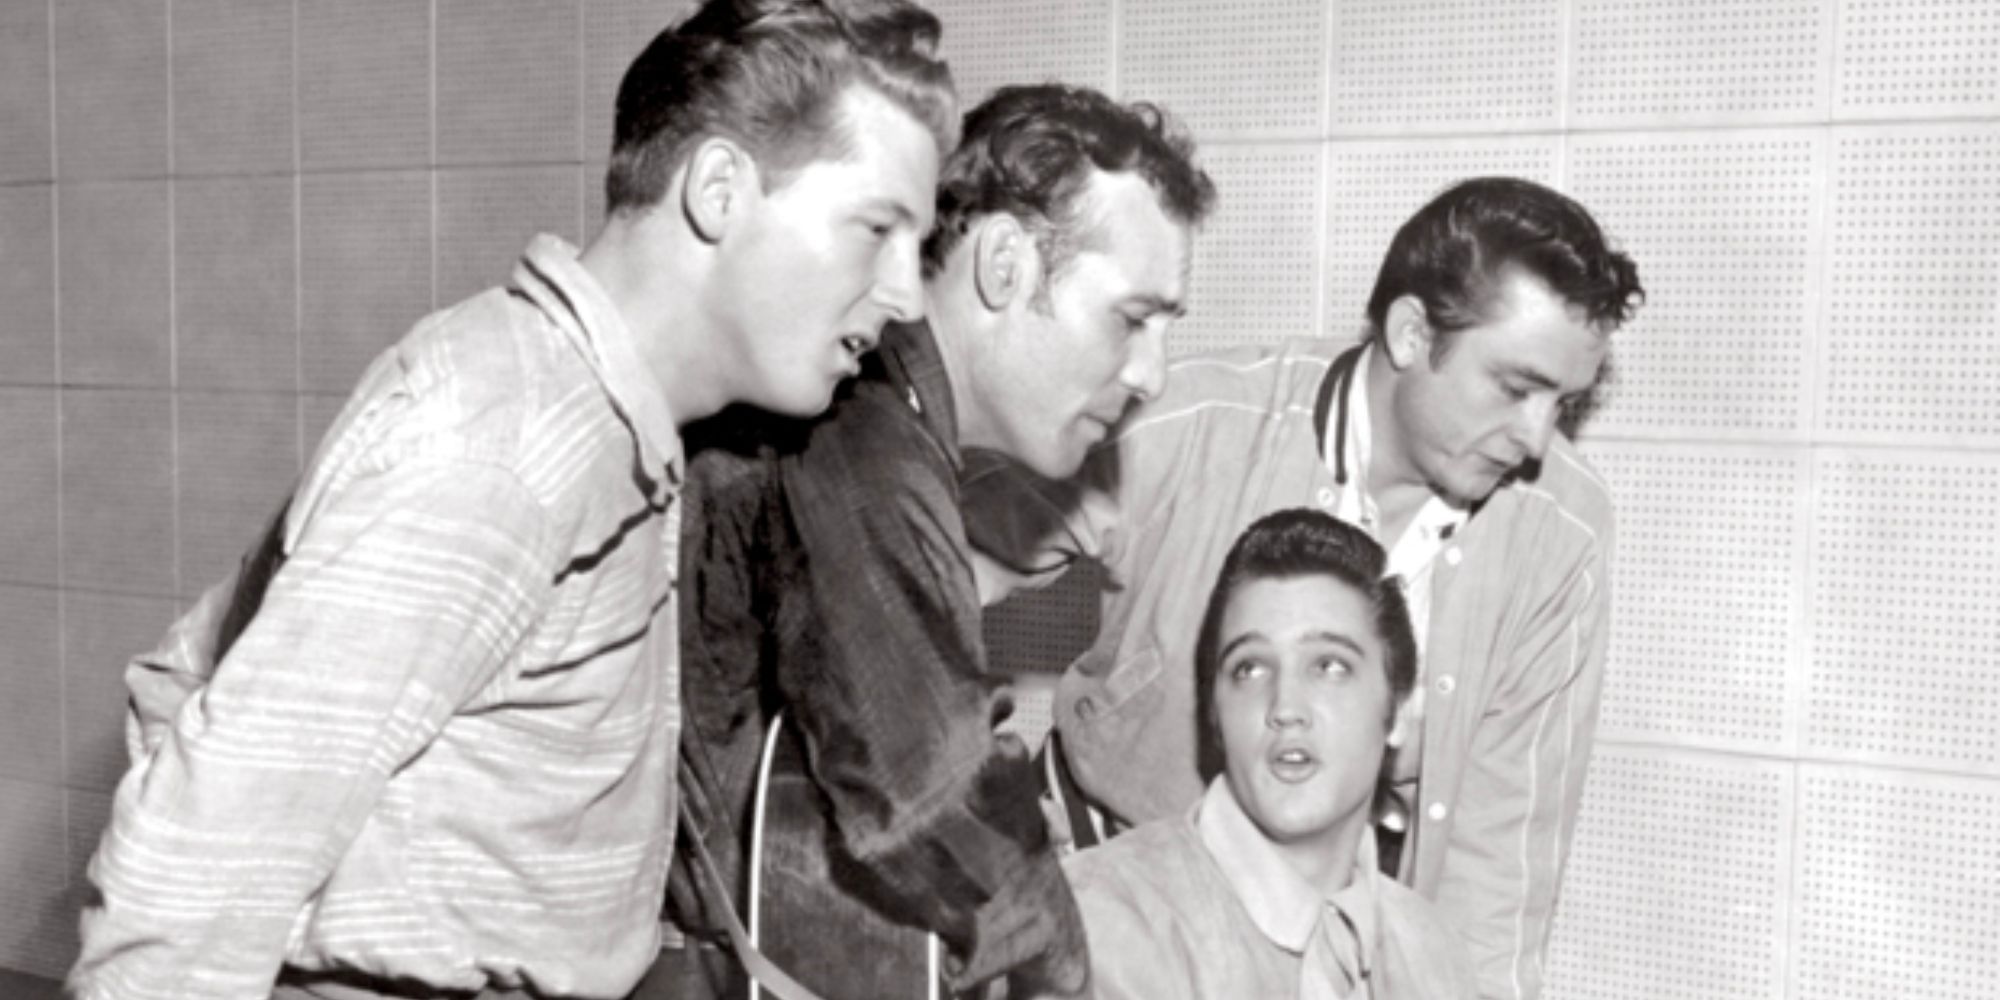 Million Dollar Quartet - Carl Perkins, Jerry Lee Lewis, Elvis Presley and Johnny Cash